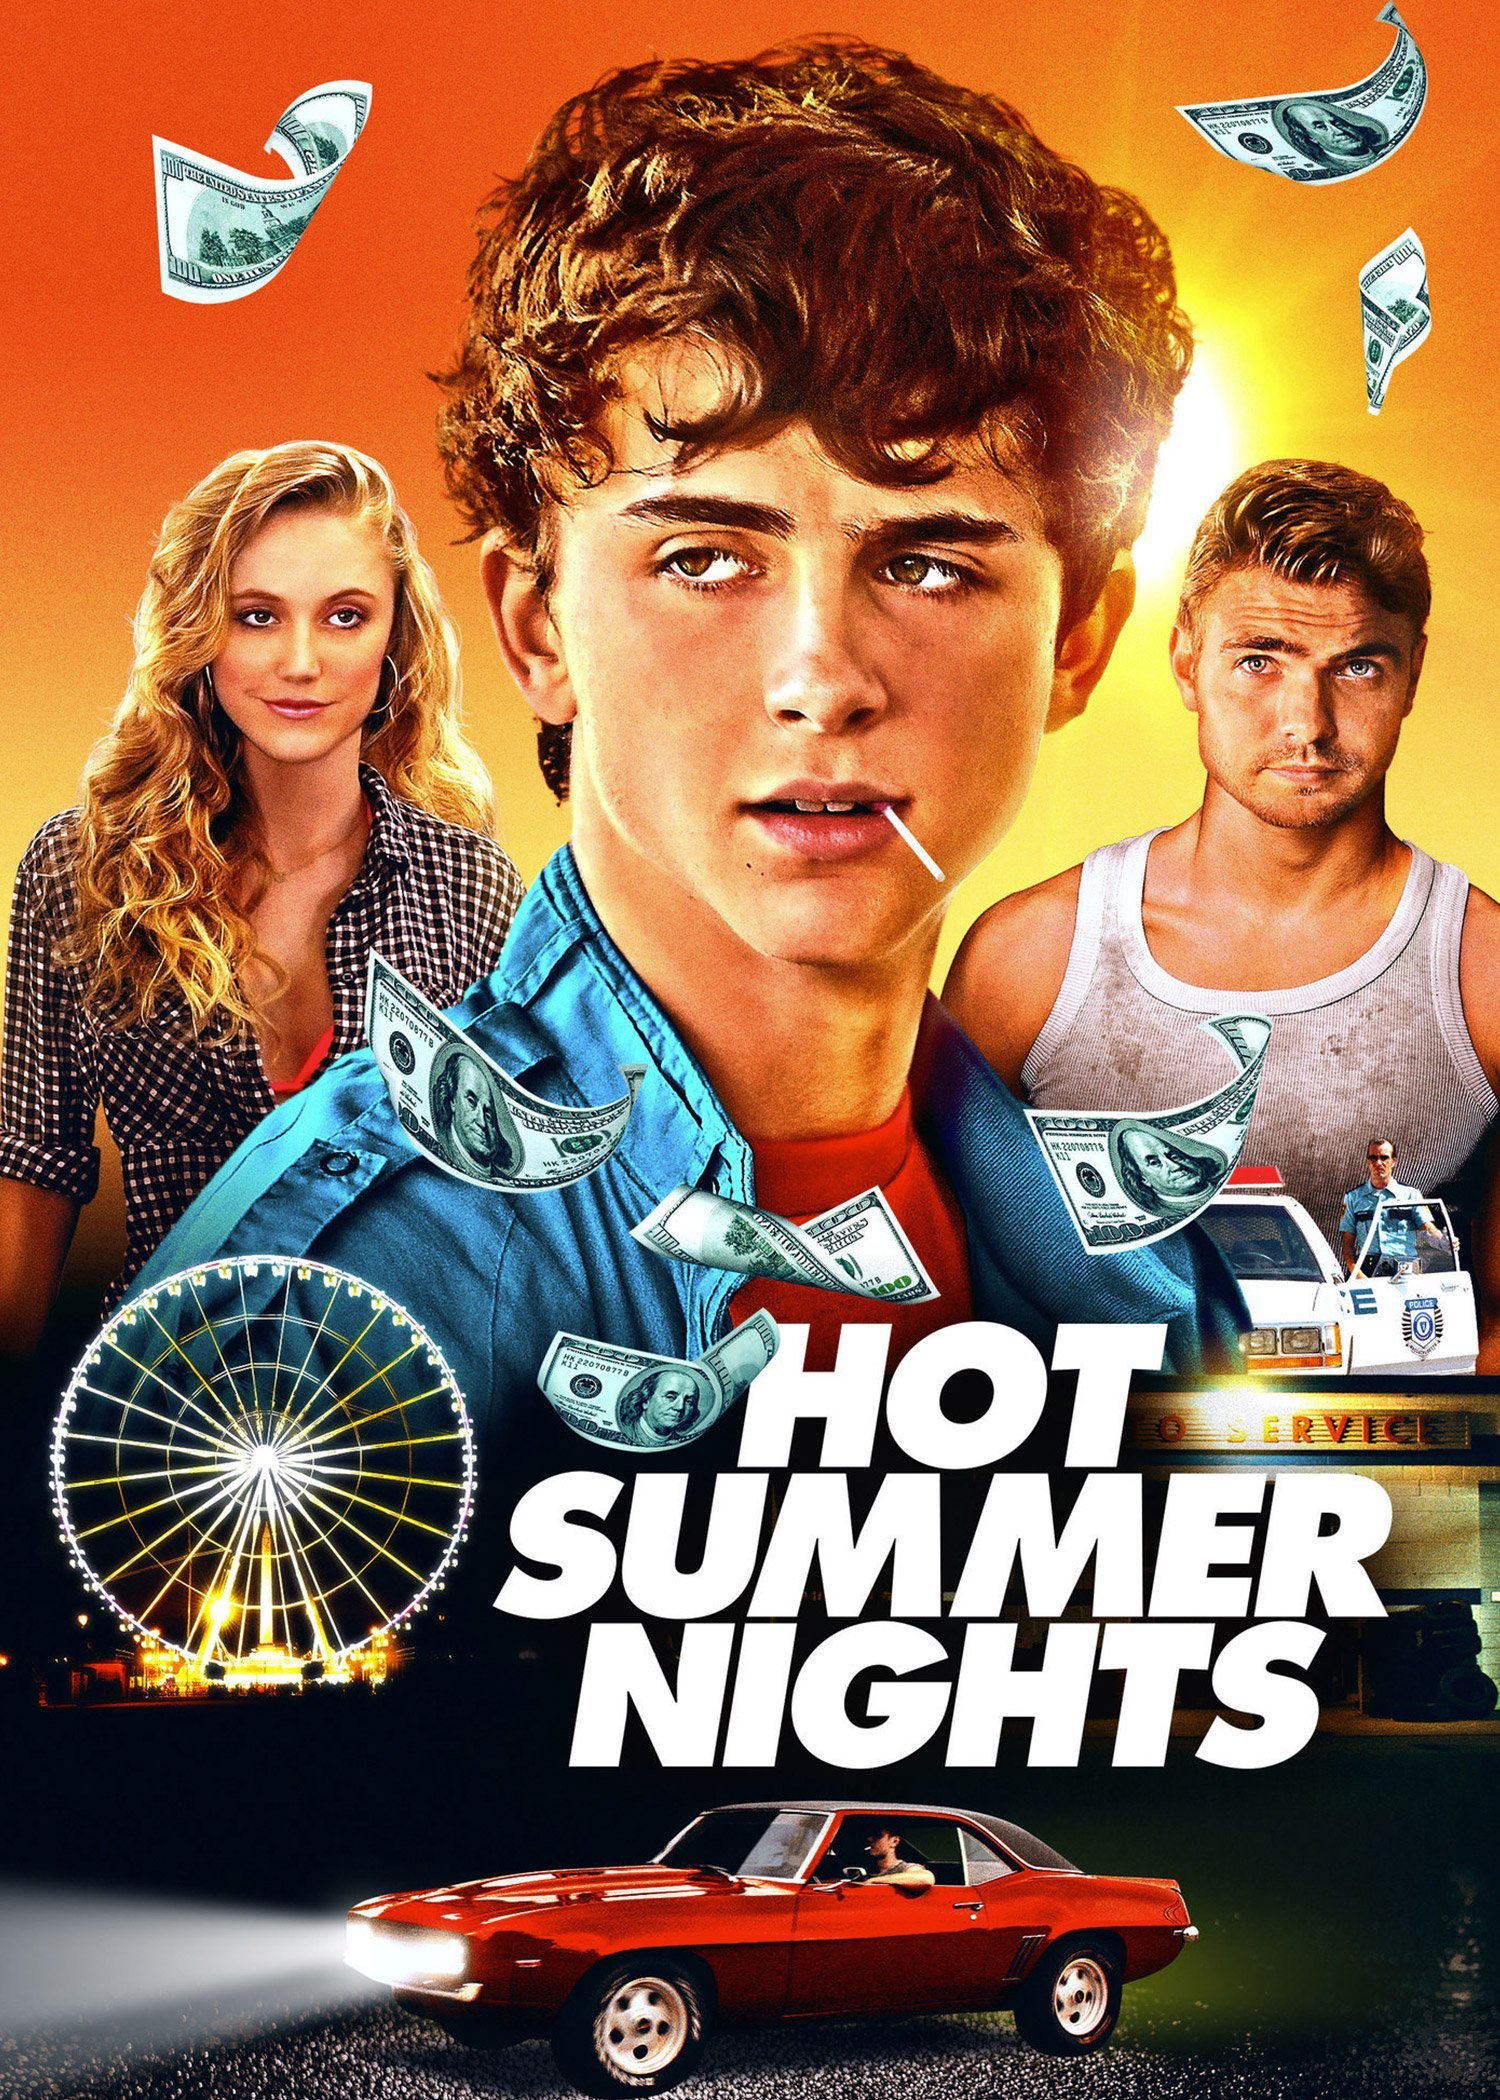 Hot Summer Nights - Movies - Watch free - Rakuten TV